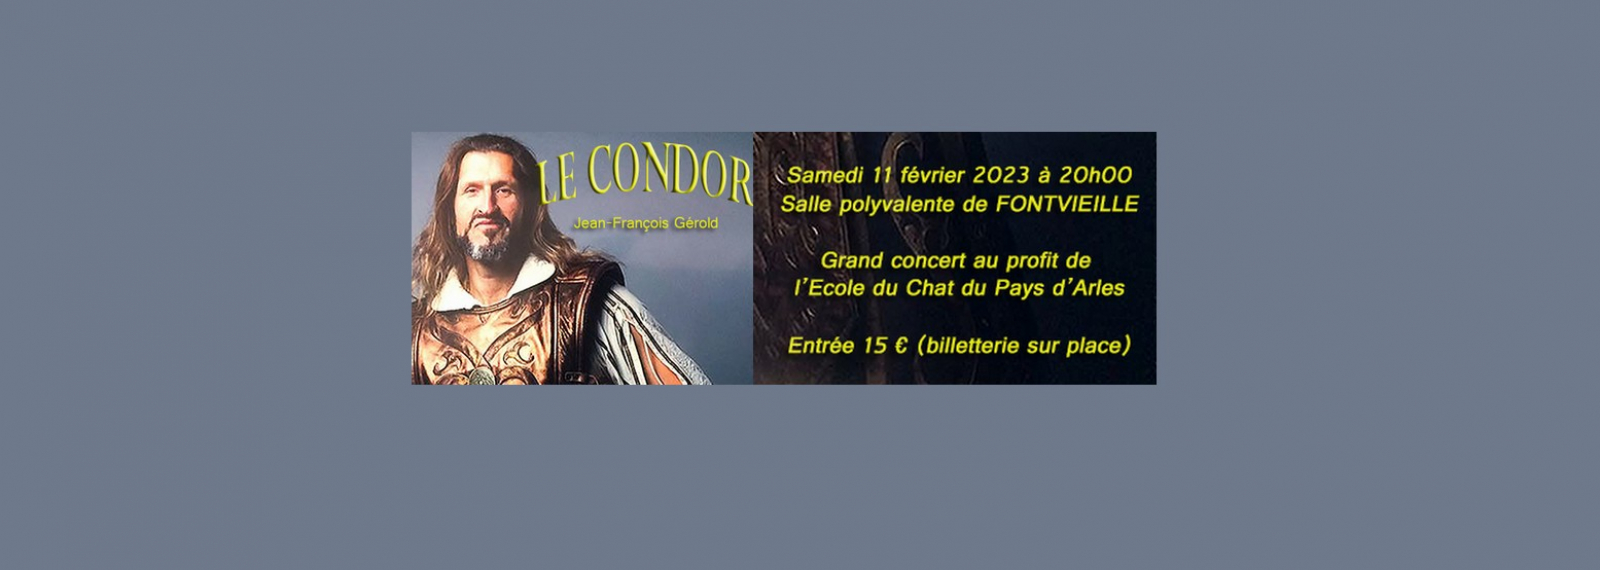 Concert Le Condor de l'Association Ecole du Chat du Pays d'Arles